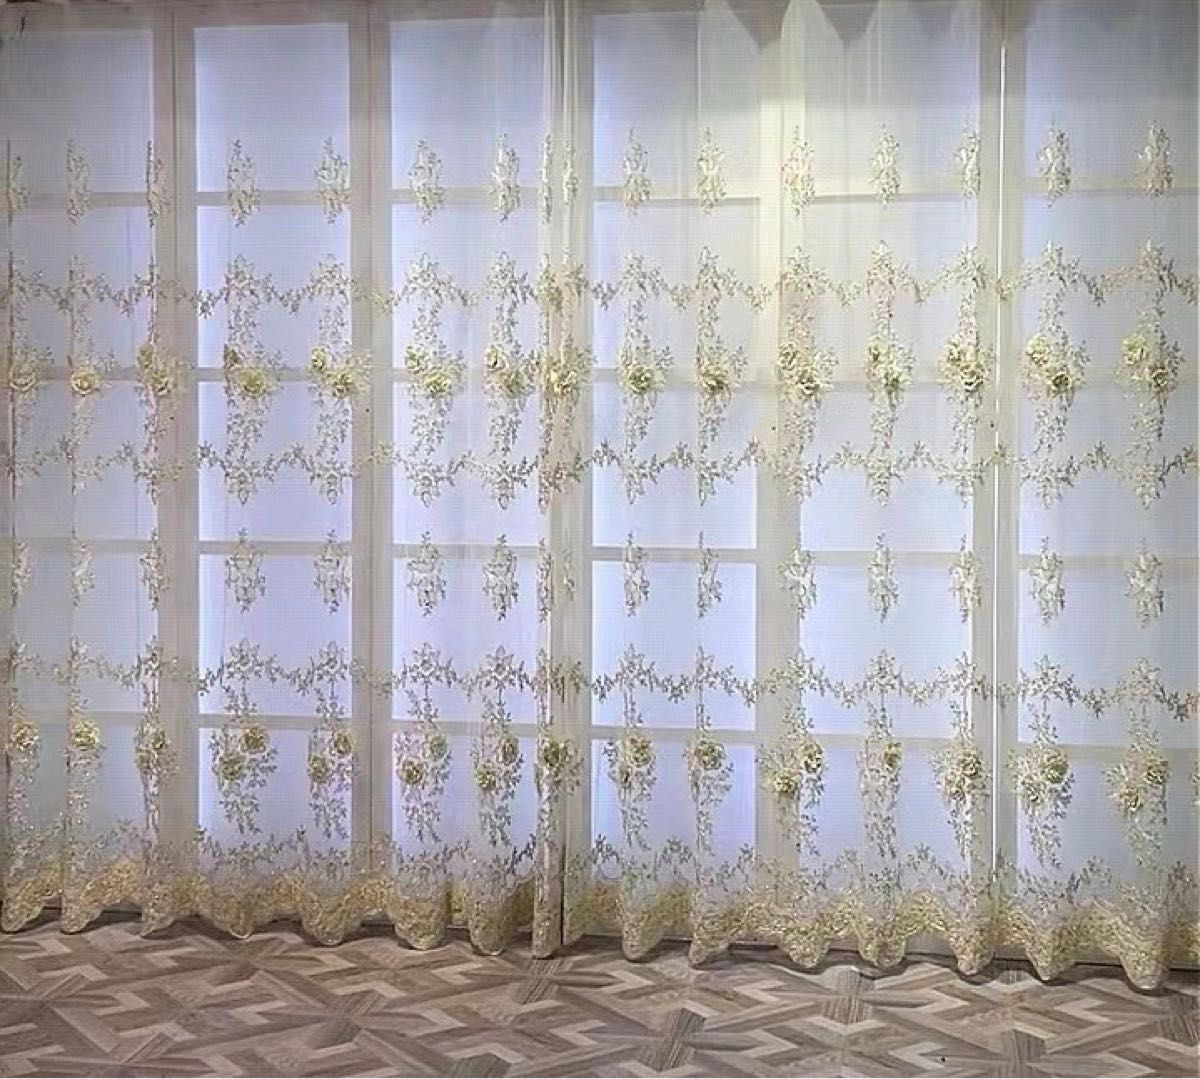 カーテン レースカーテン 幅100㎝ ハンドメイド レース アンティーク かわいい 立体刺繍柄 高級 オーダーカーテン